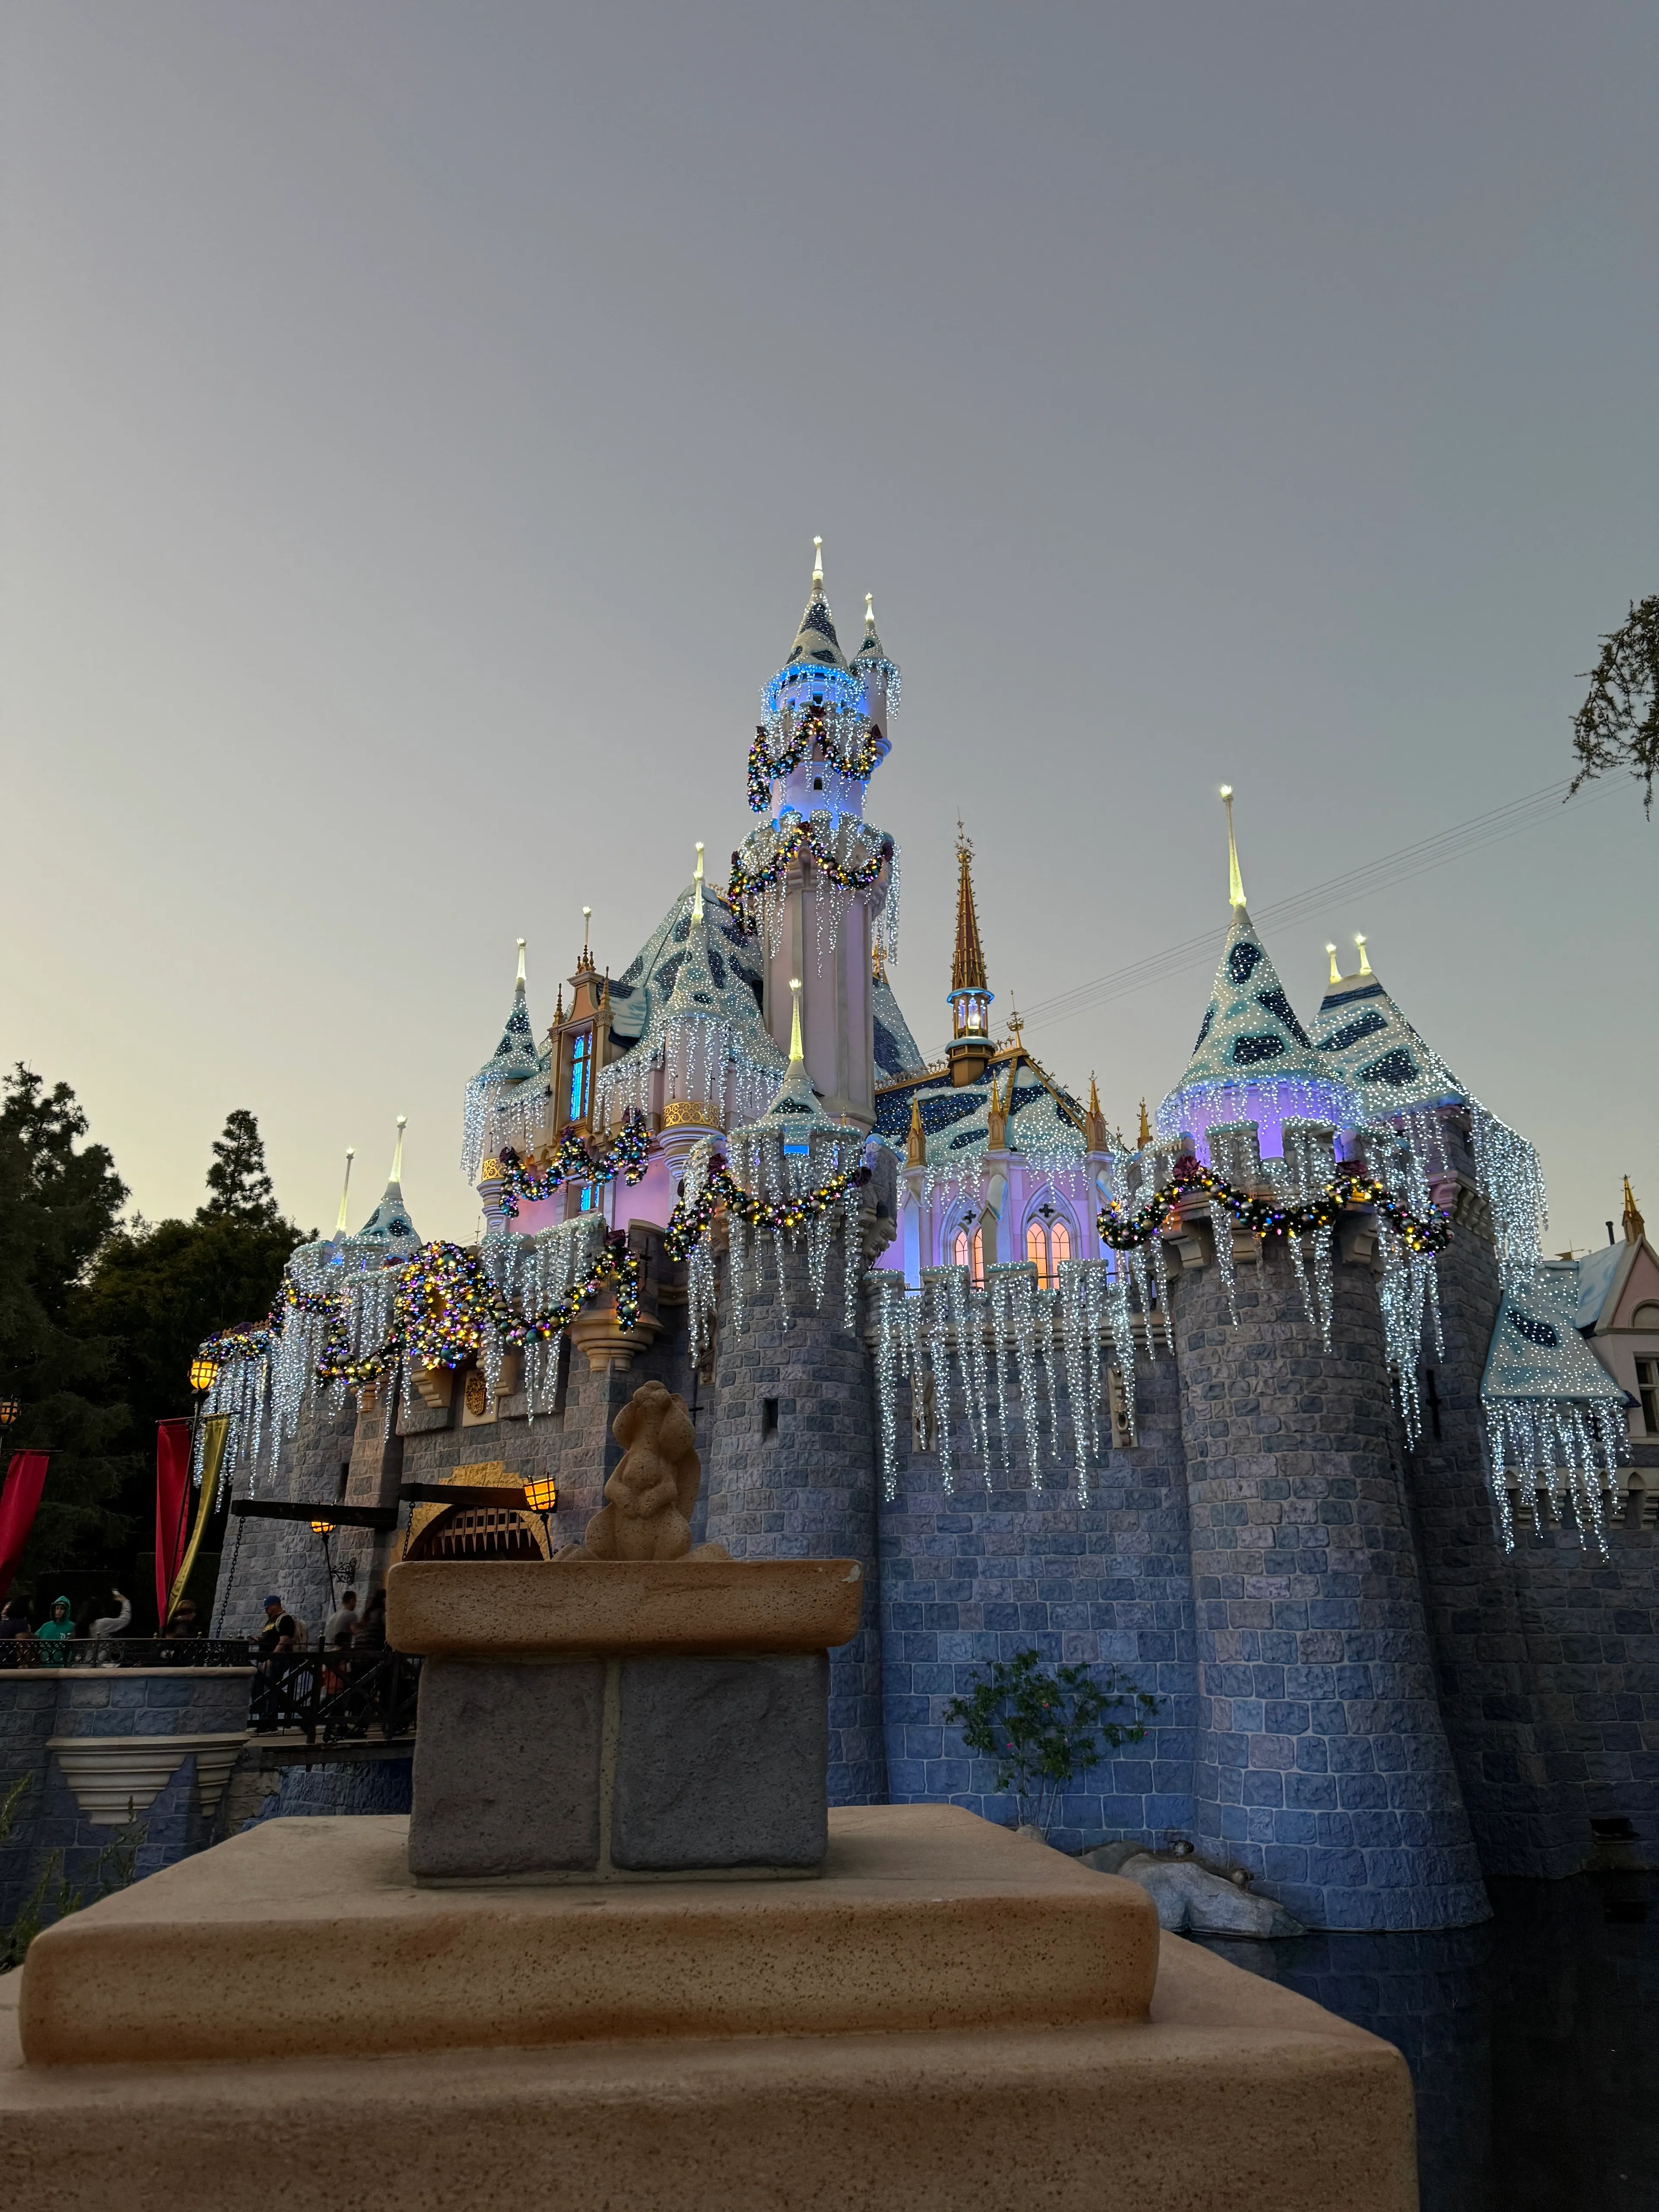 迪士尼乐园睡美人城堡的未编辑照片。